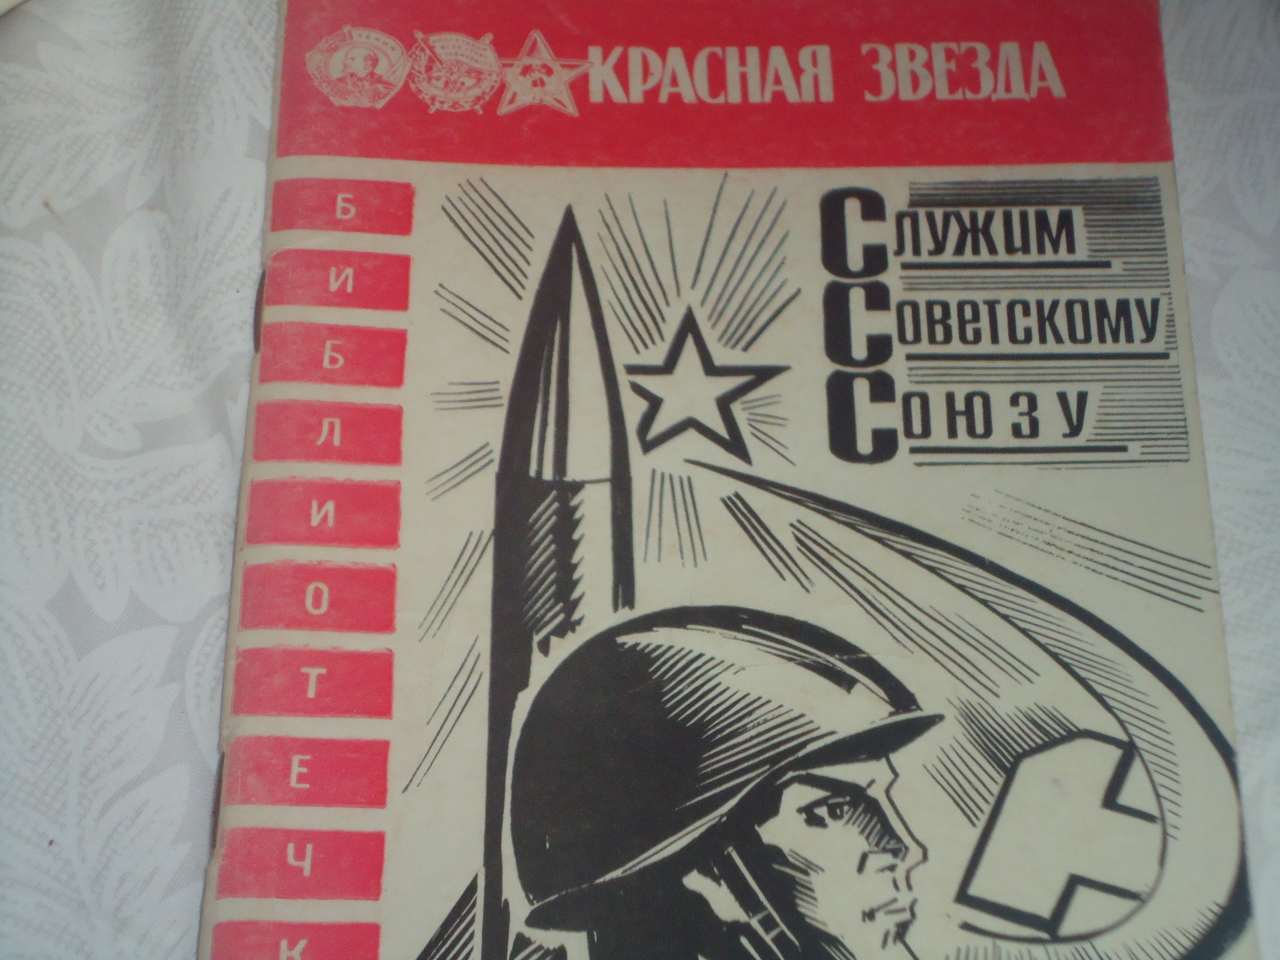 Cлужим советскому союзу